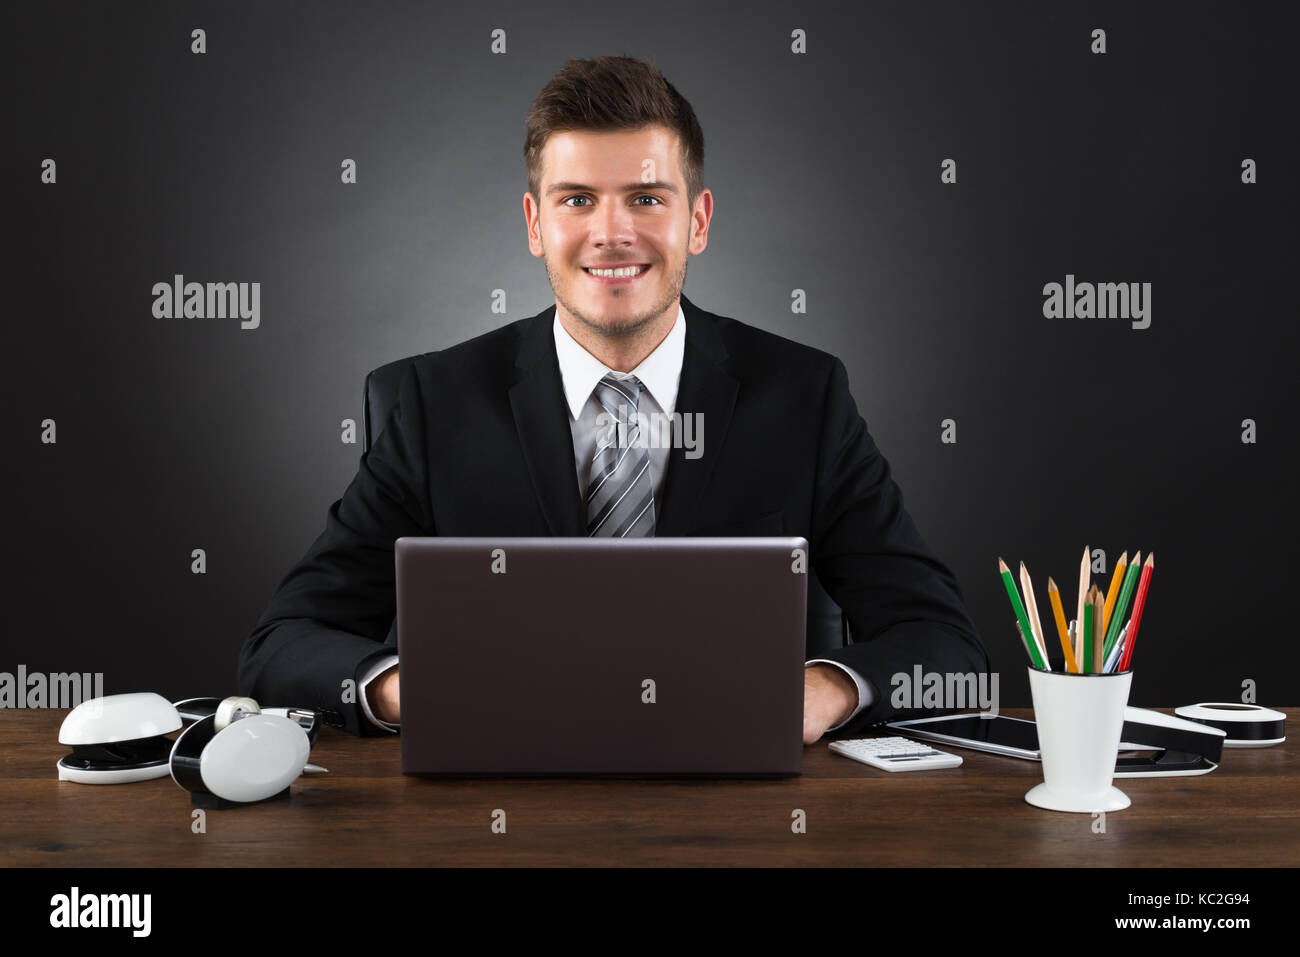 Les jeunes professionnels Businessman Working With Laptop At Desk Banque D'Images